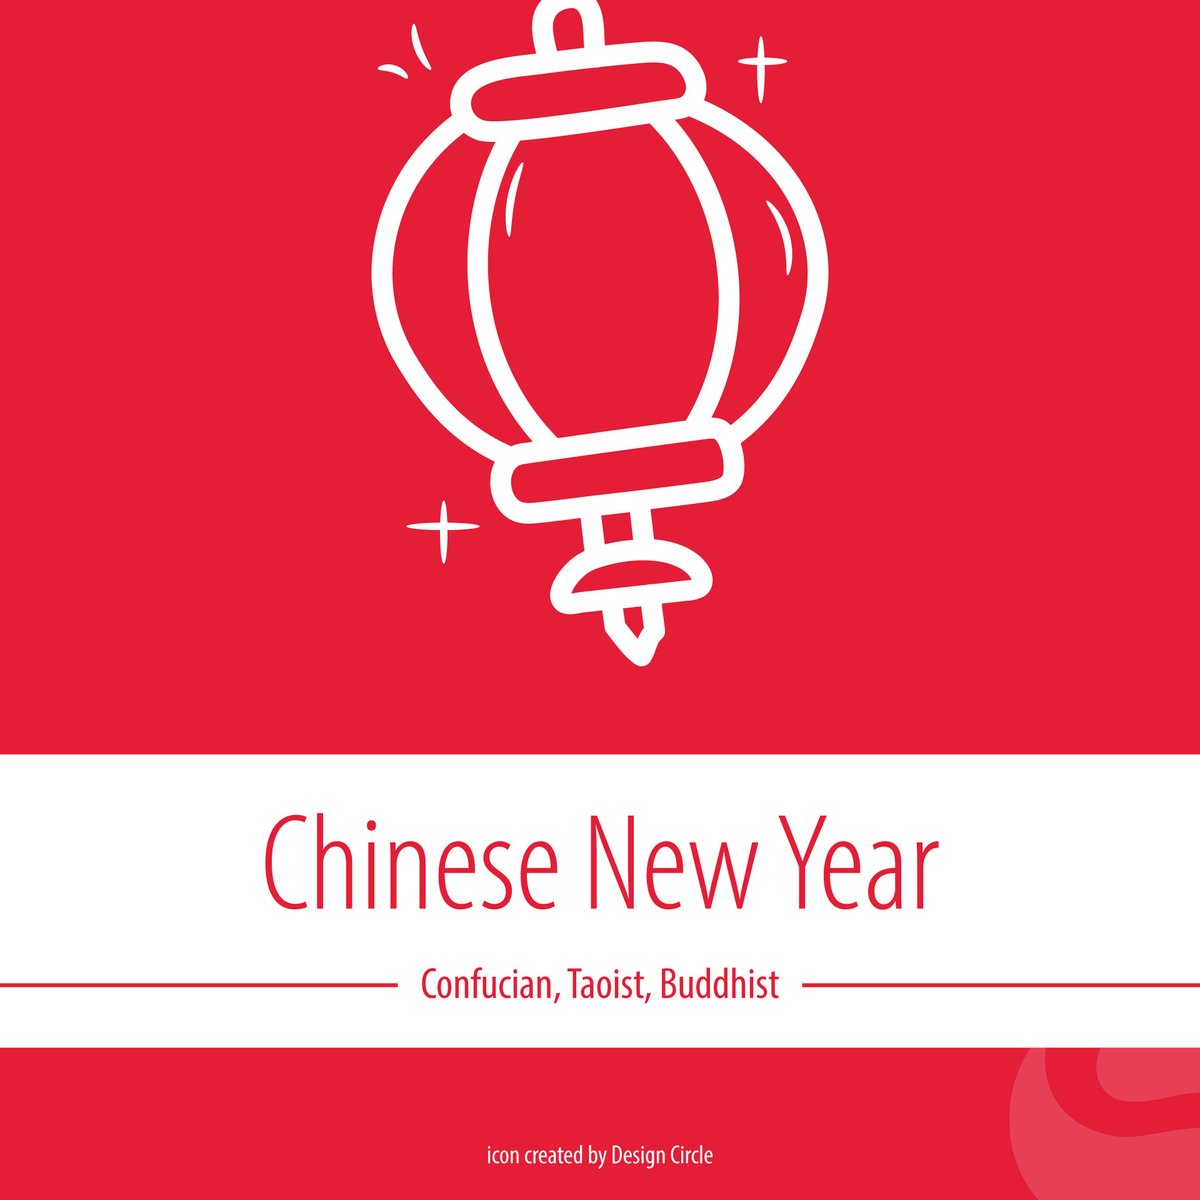 Happy Lunar New Year, Year of the Dragon. #ChineseNewYear